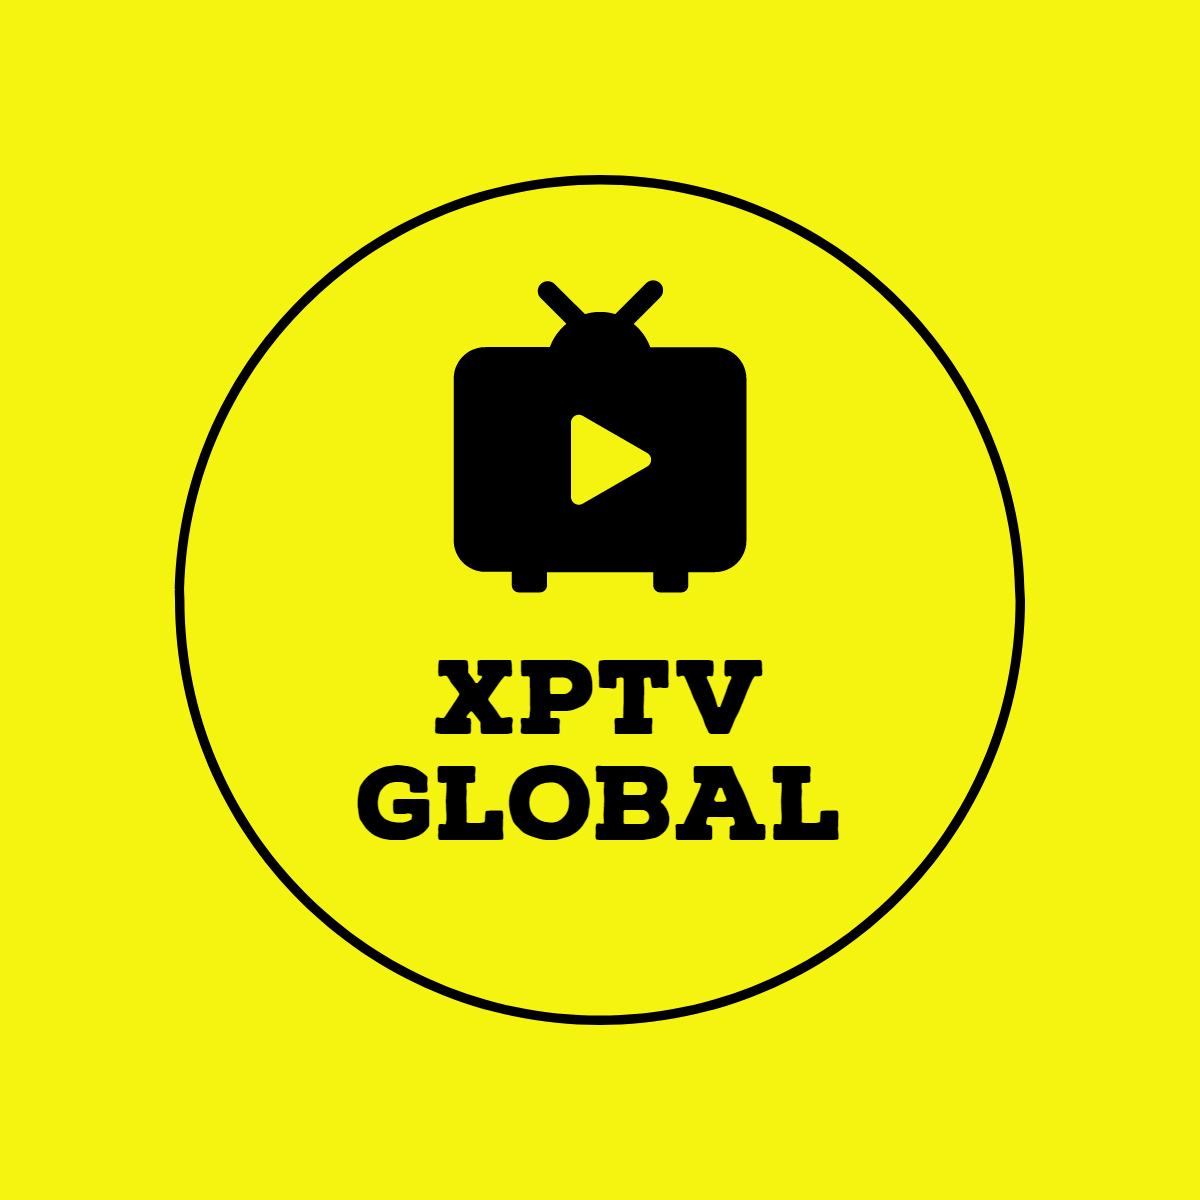 XPTV Global